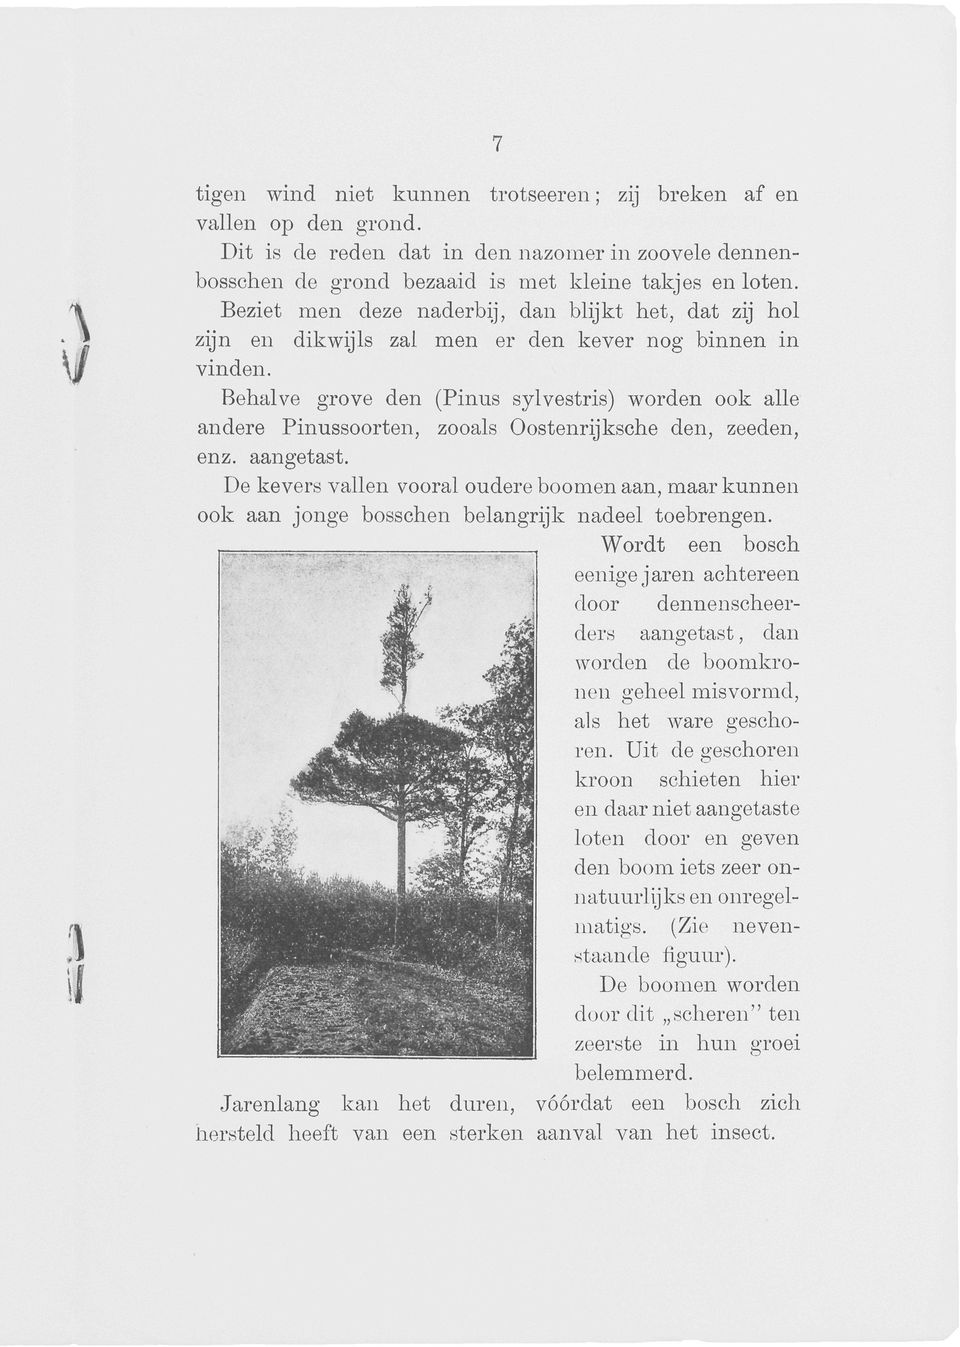 Behalve grove den (Pinus sylvestris) worden ook alle andere Pinussoorten, zooals Oostenrijksche den, zeeden, enz. aangetast.